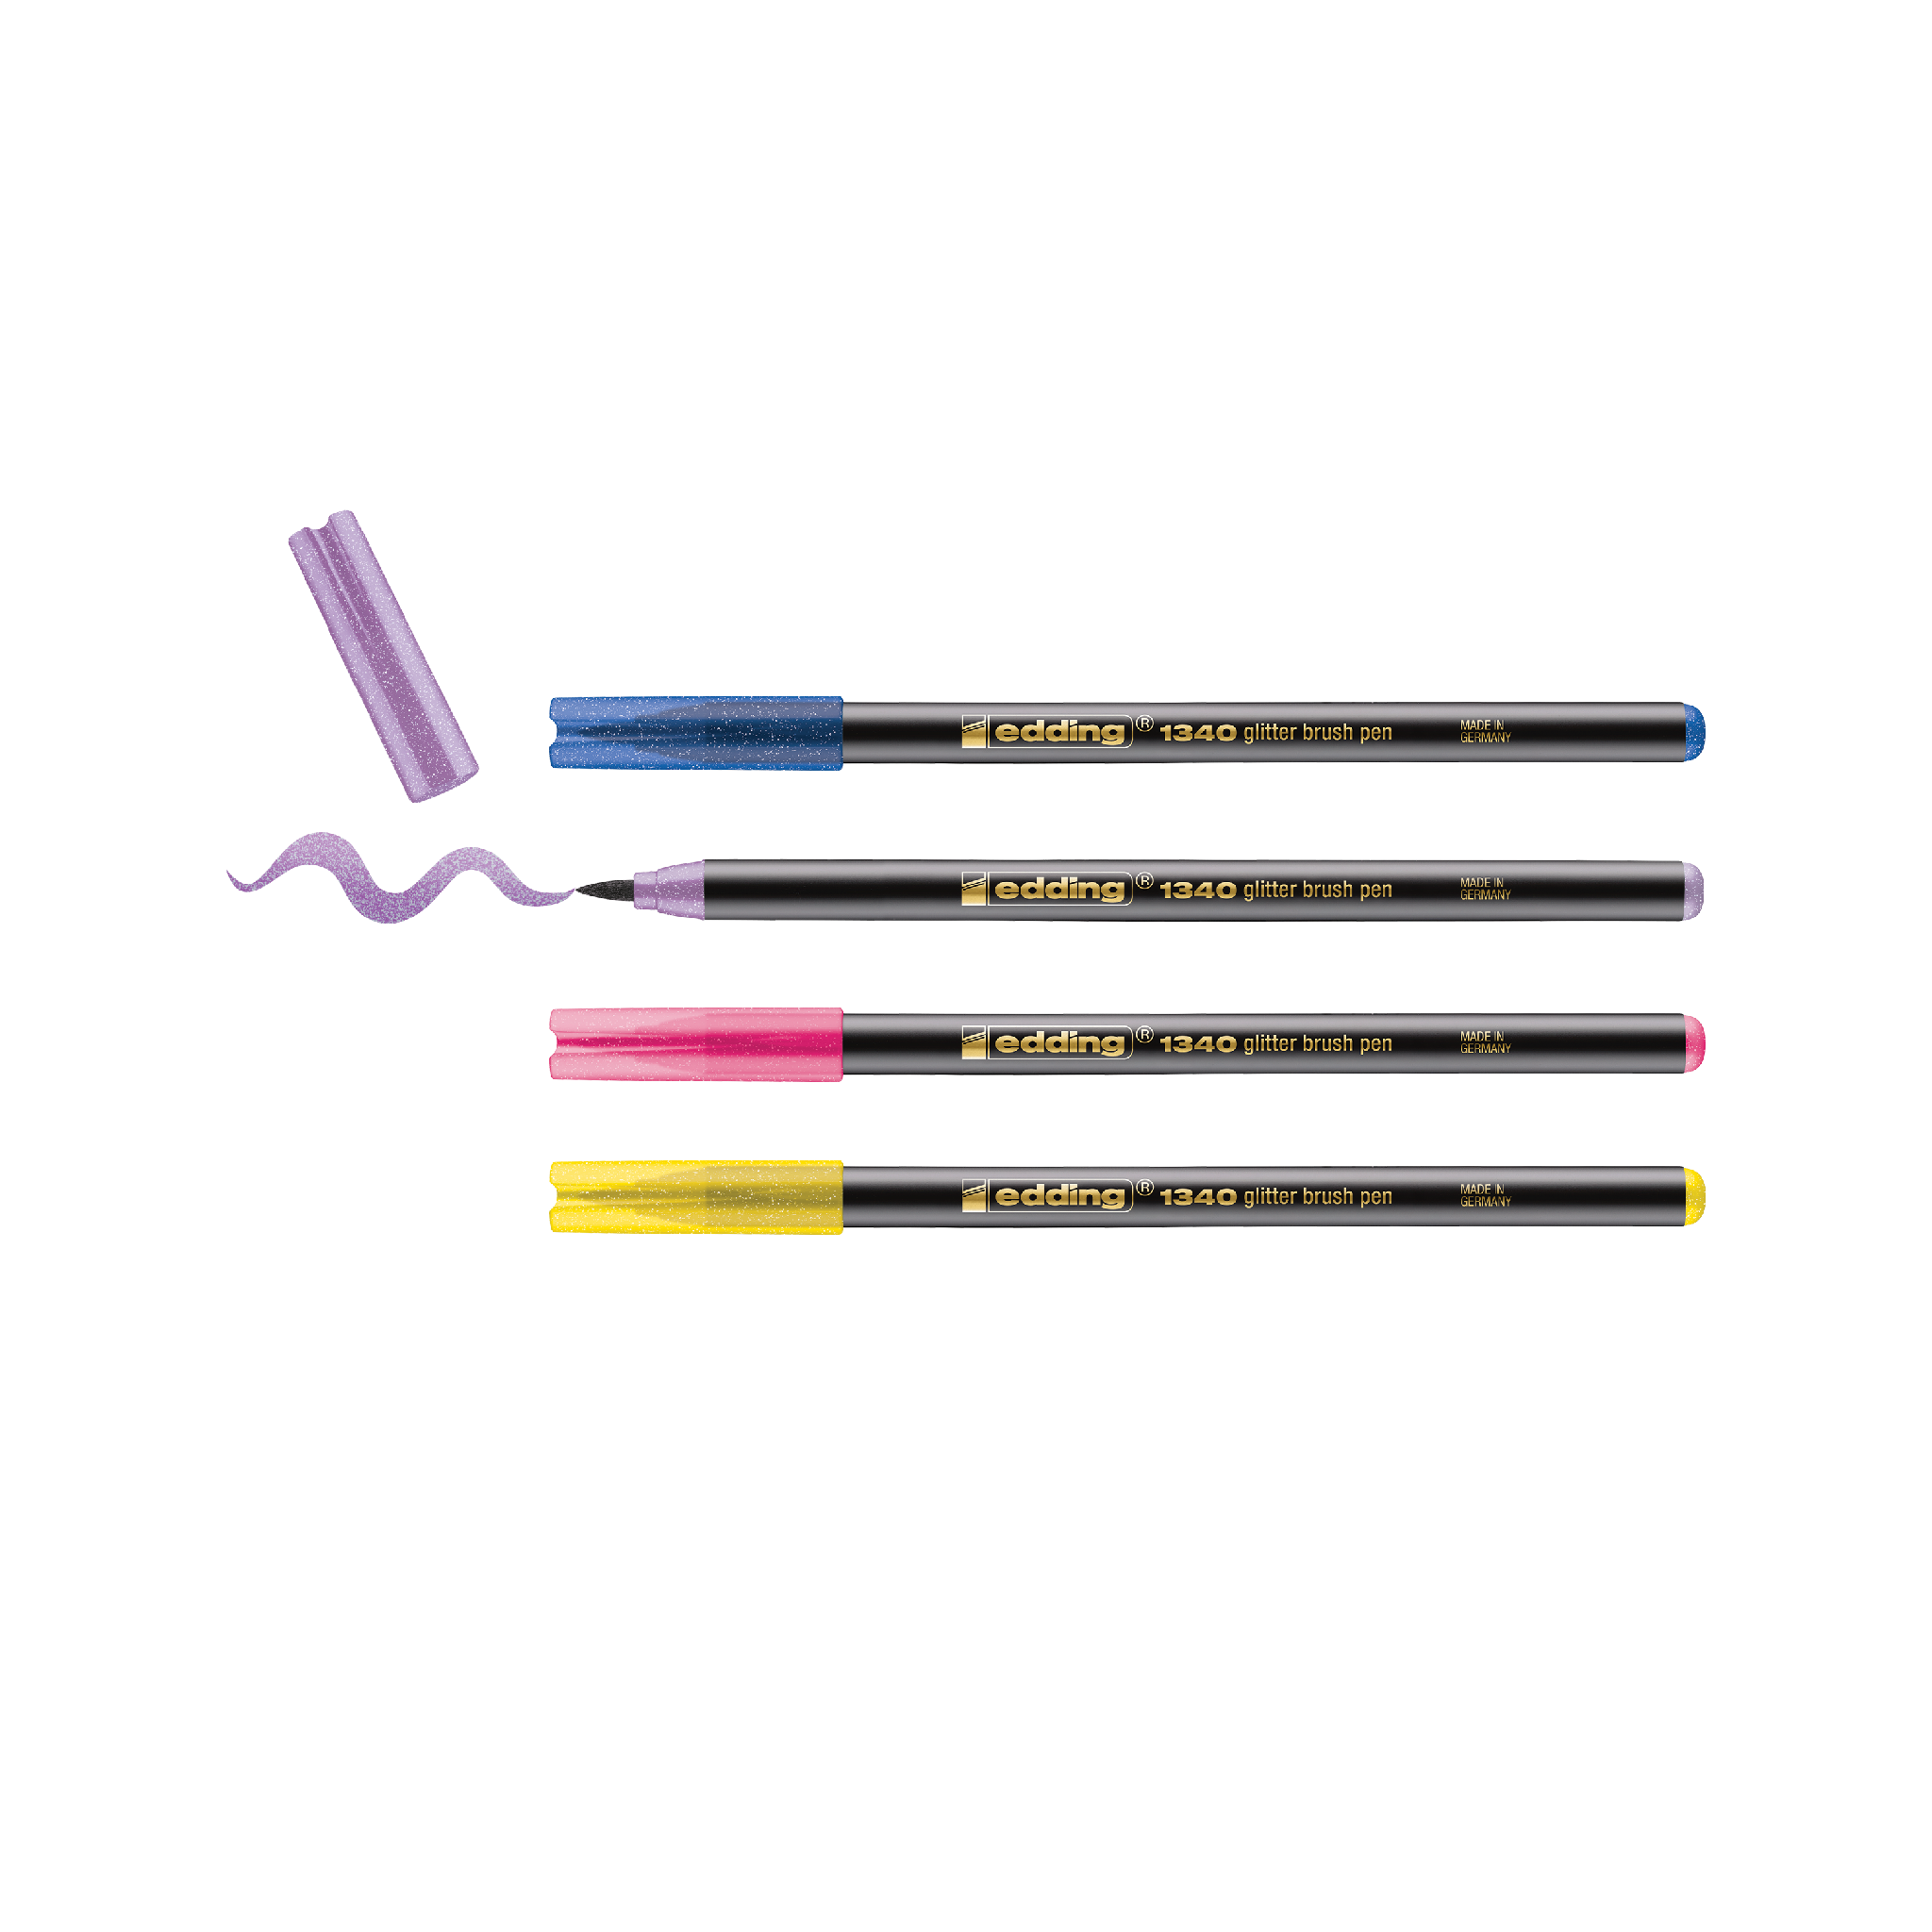 Eine Packung mit vier edding 1340 glitzer Pinselstiften in leuchtenden Farben, mit flexibler Pinselspitze für variable Strichbreite, ideal für Handlettering und kreative Kunstwerke.